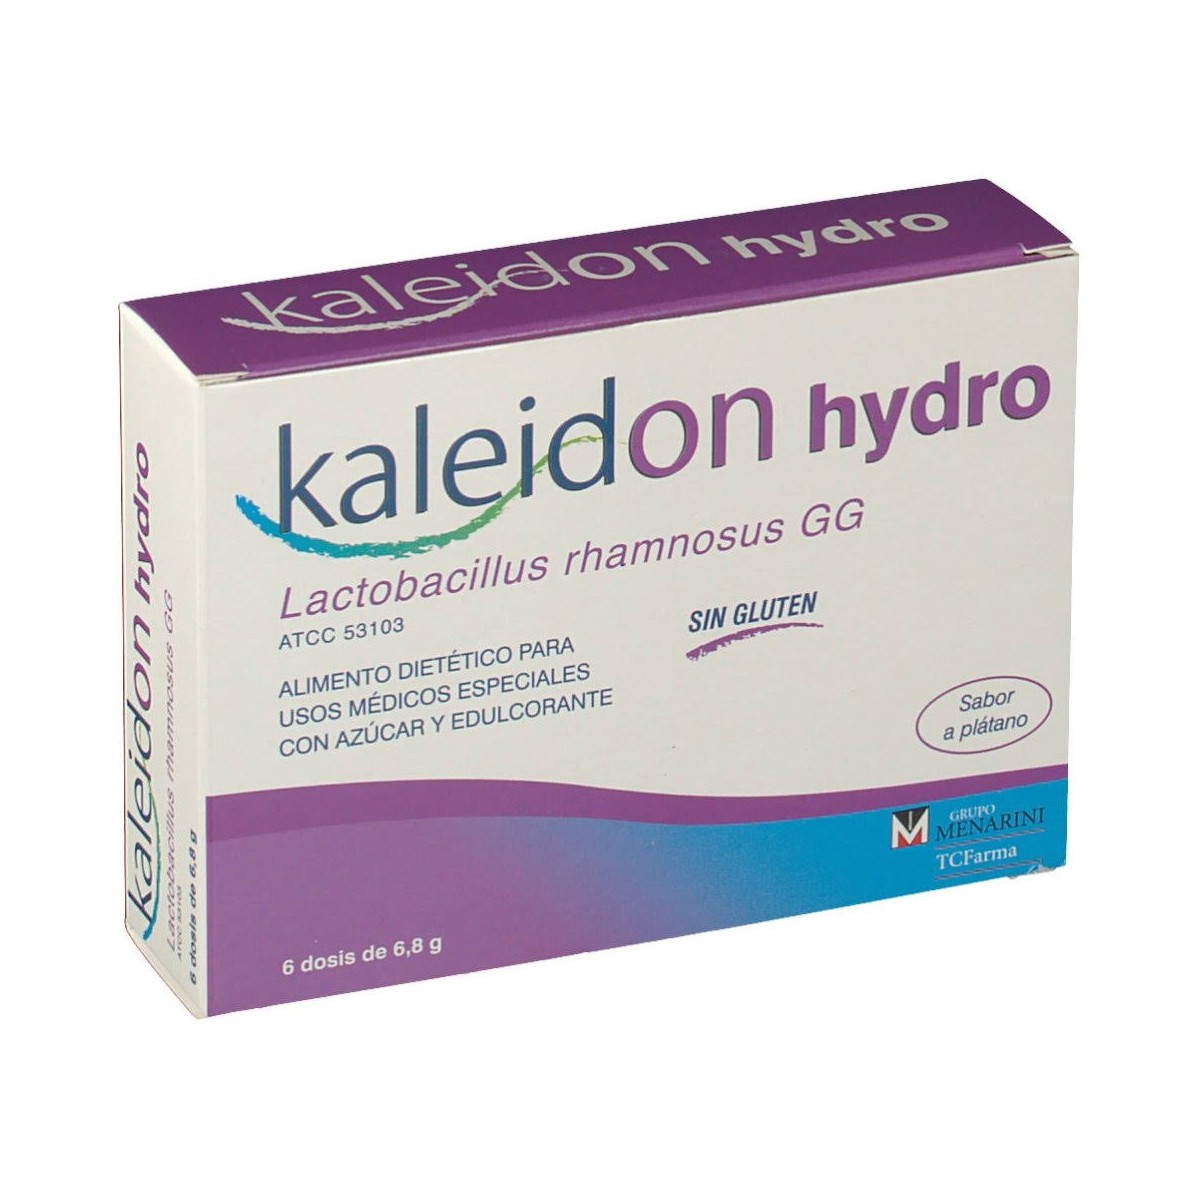 kaleidon hydro 6 dosis